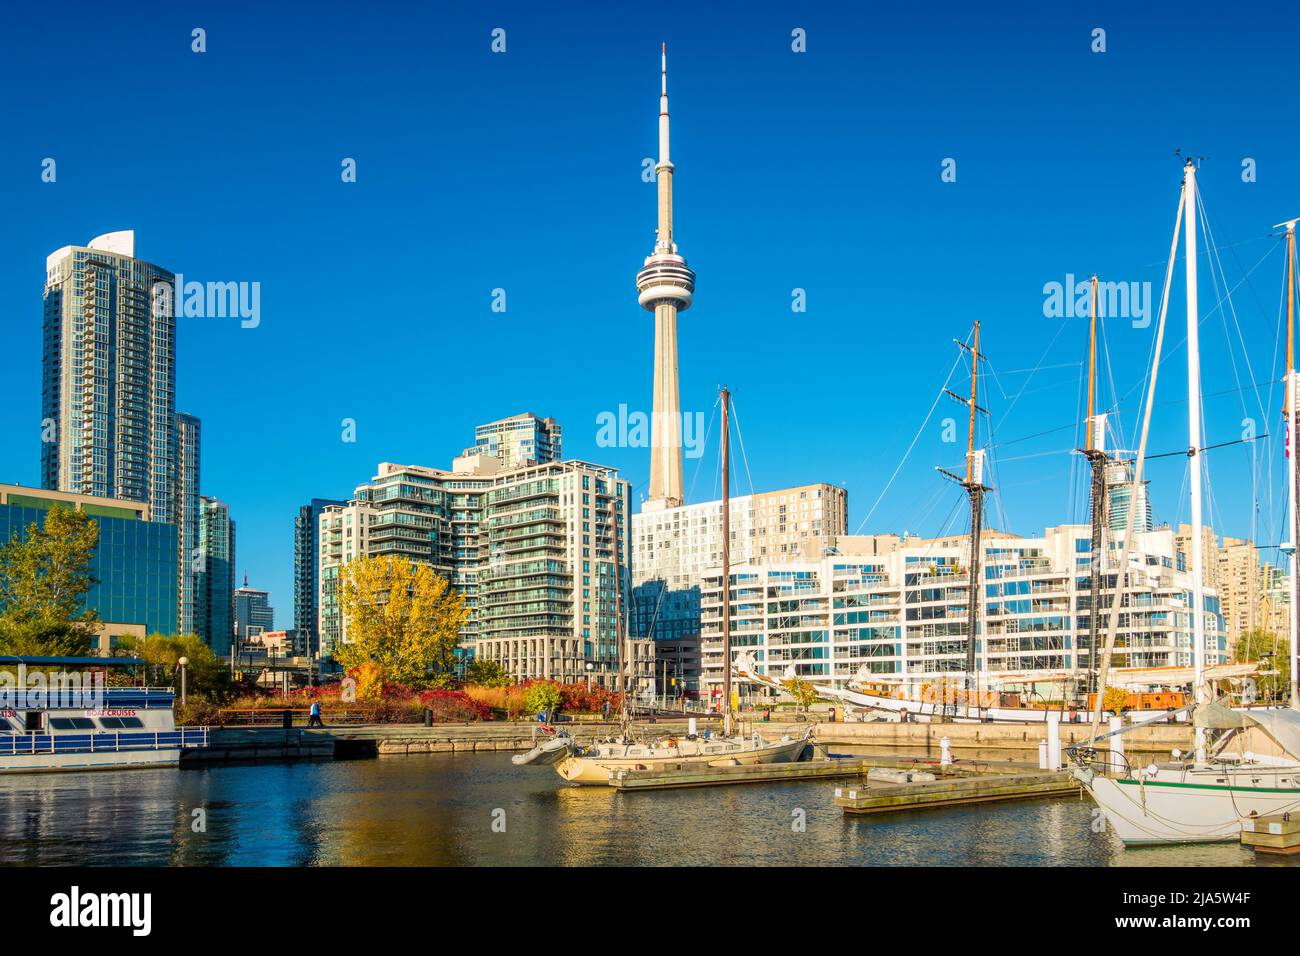 Centro de la zona ribereña, puerto de Toronto, Ontario, Canadá Foto de stock